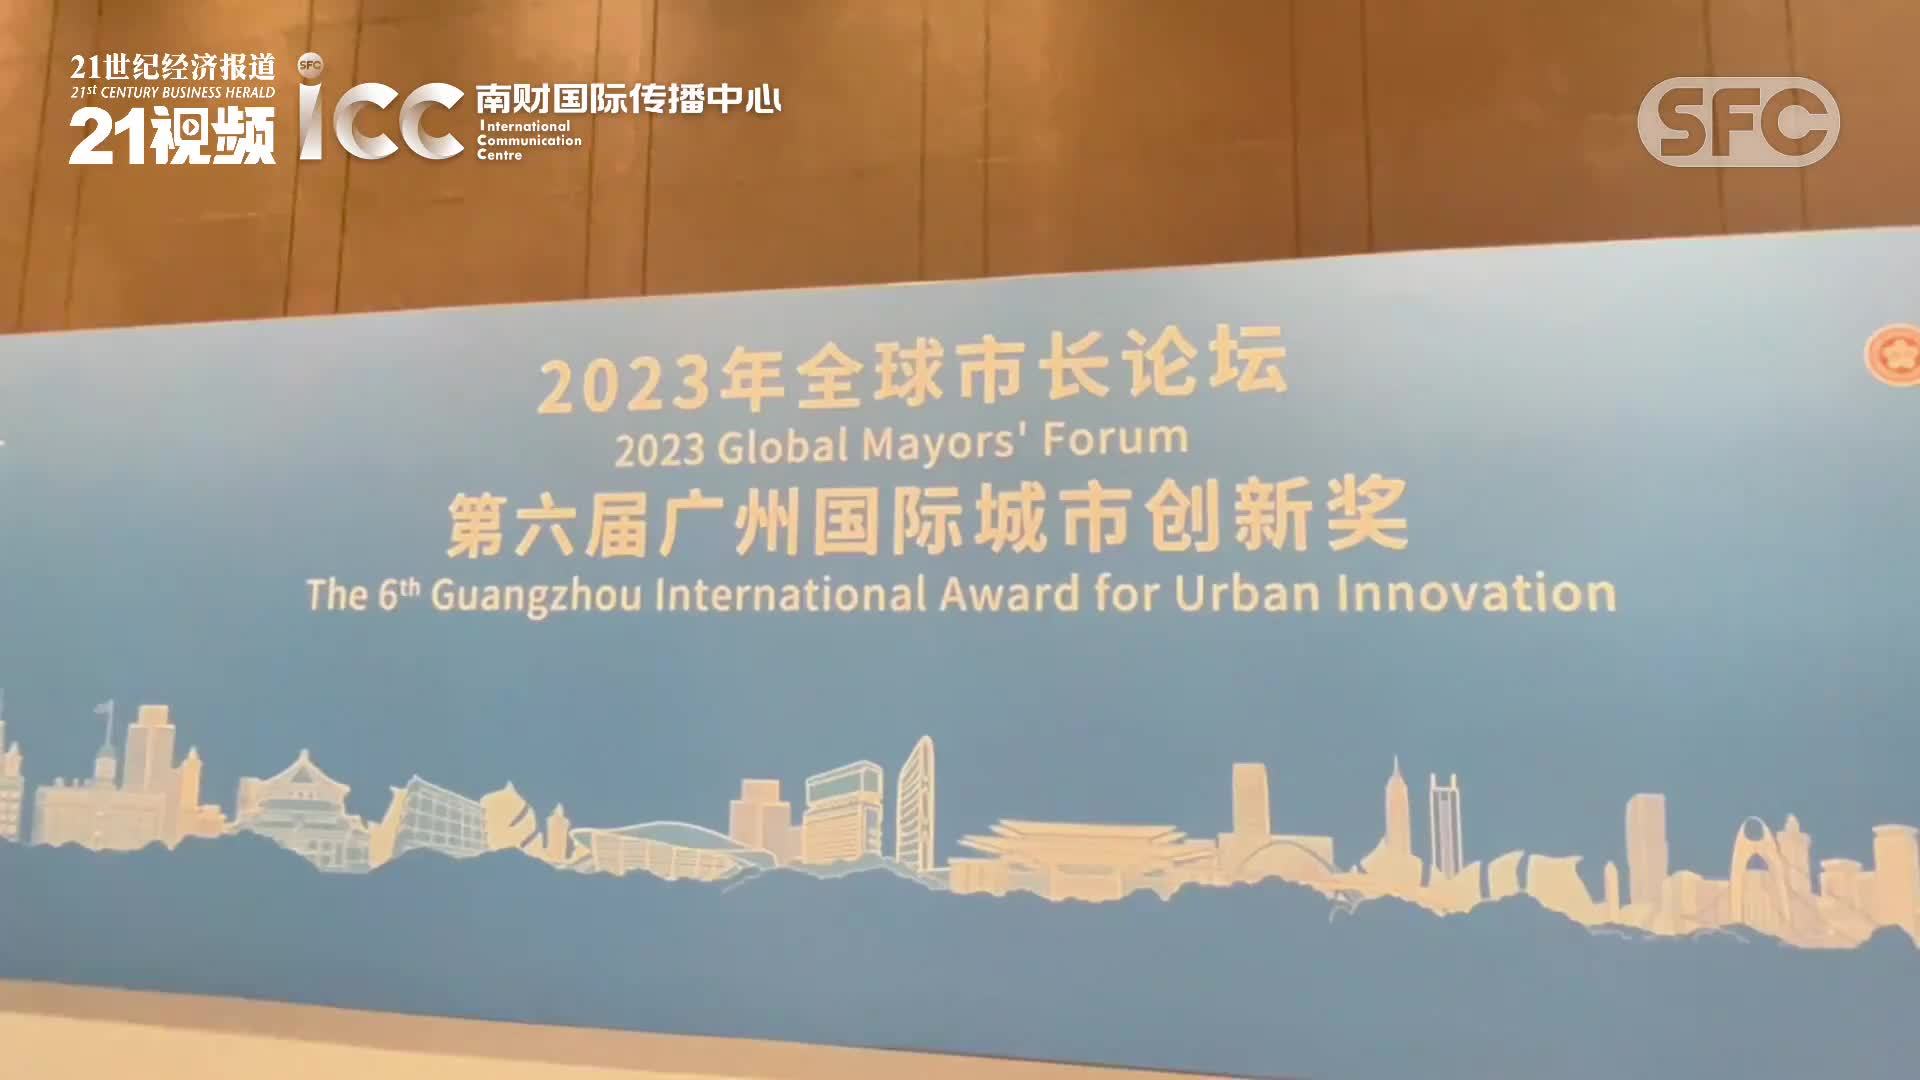 2023年全球市长论坛暨第六届广州国际城市创新奖在广州举办